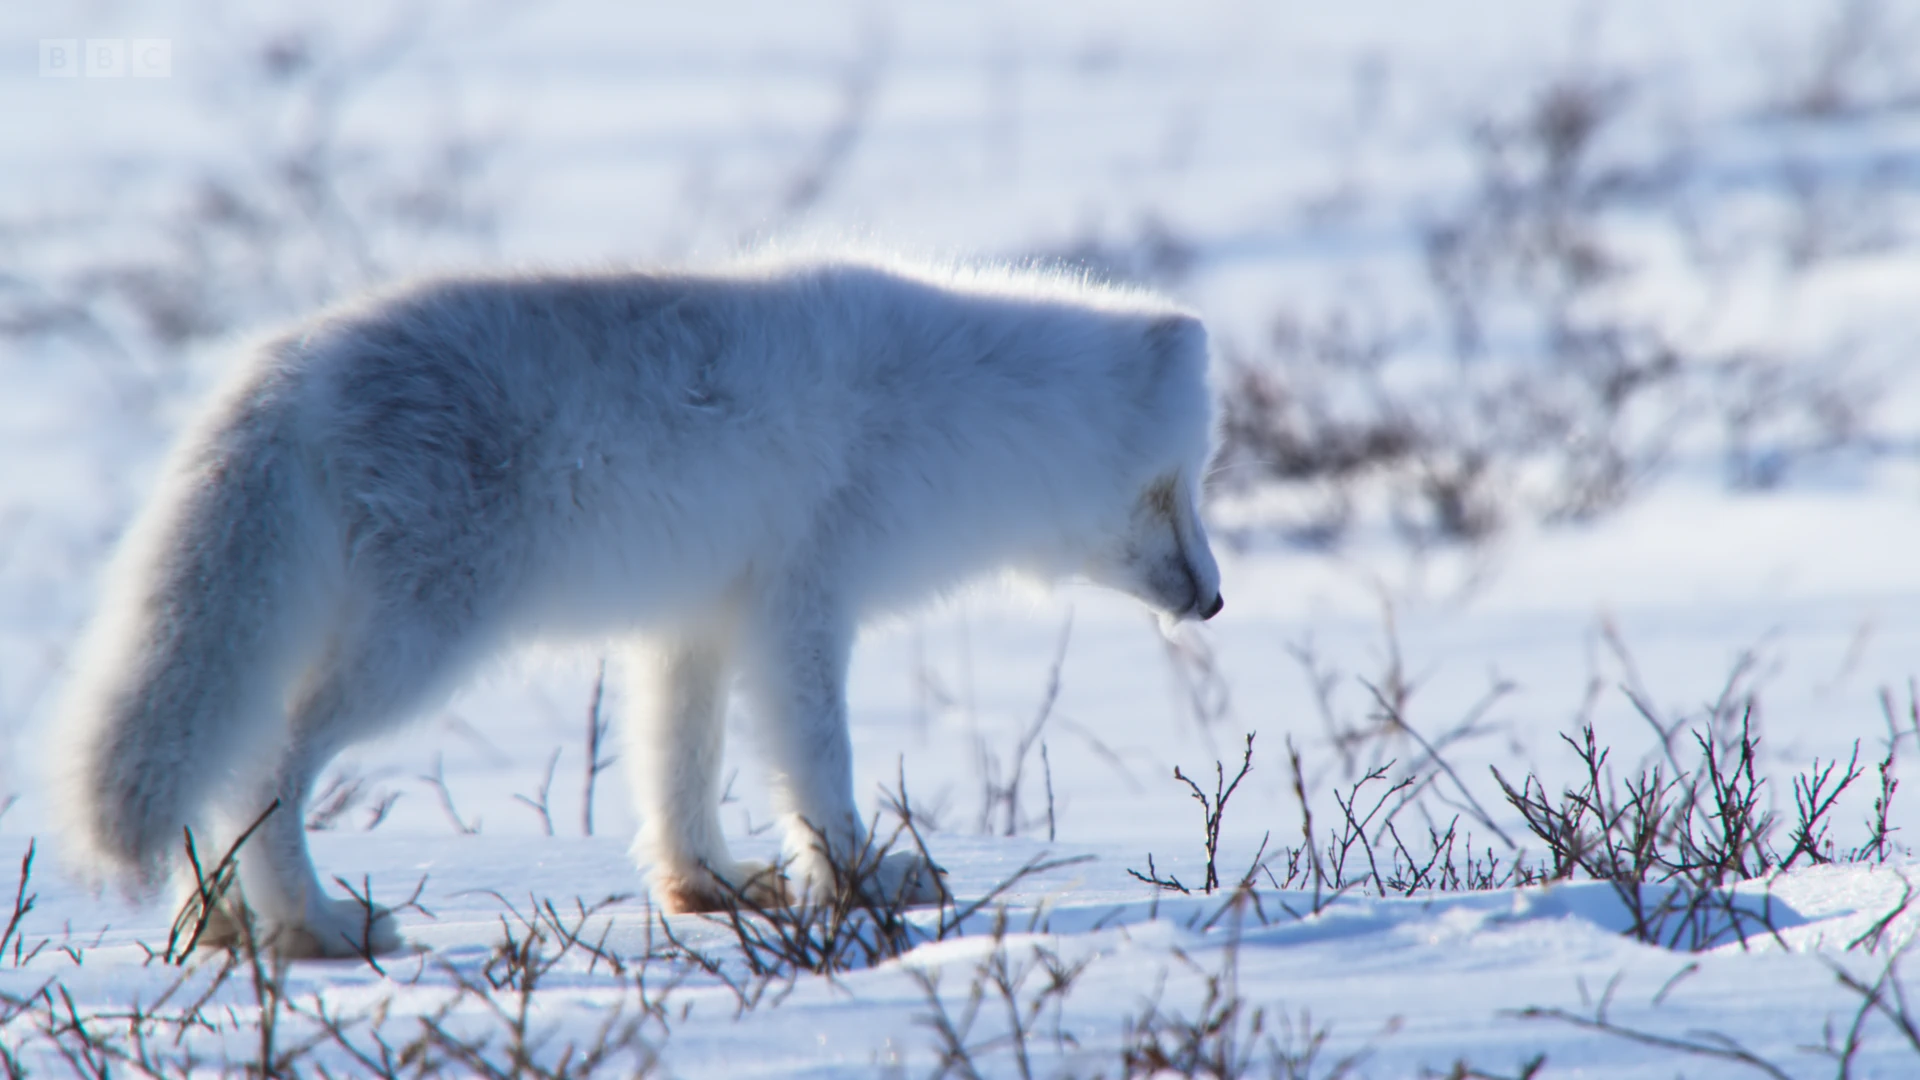 Arctic fox (Vulpes lagopus lagopus) as shown in Frozen Planet II - Frozen Lands